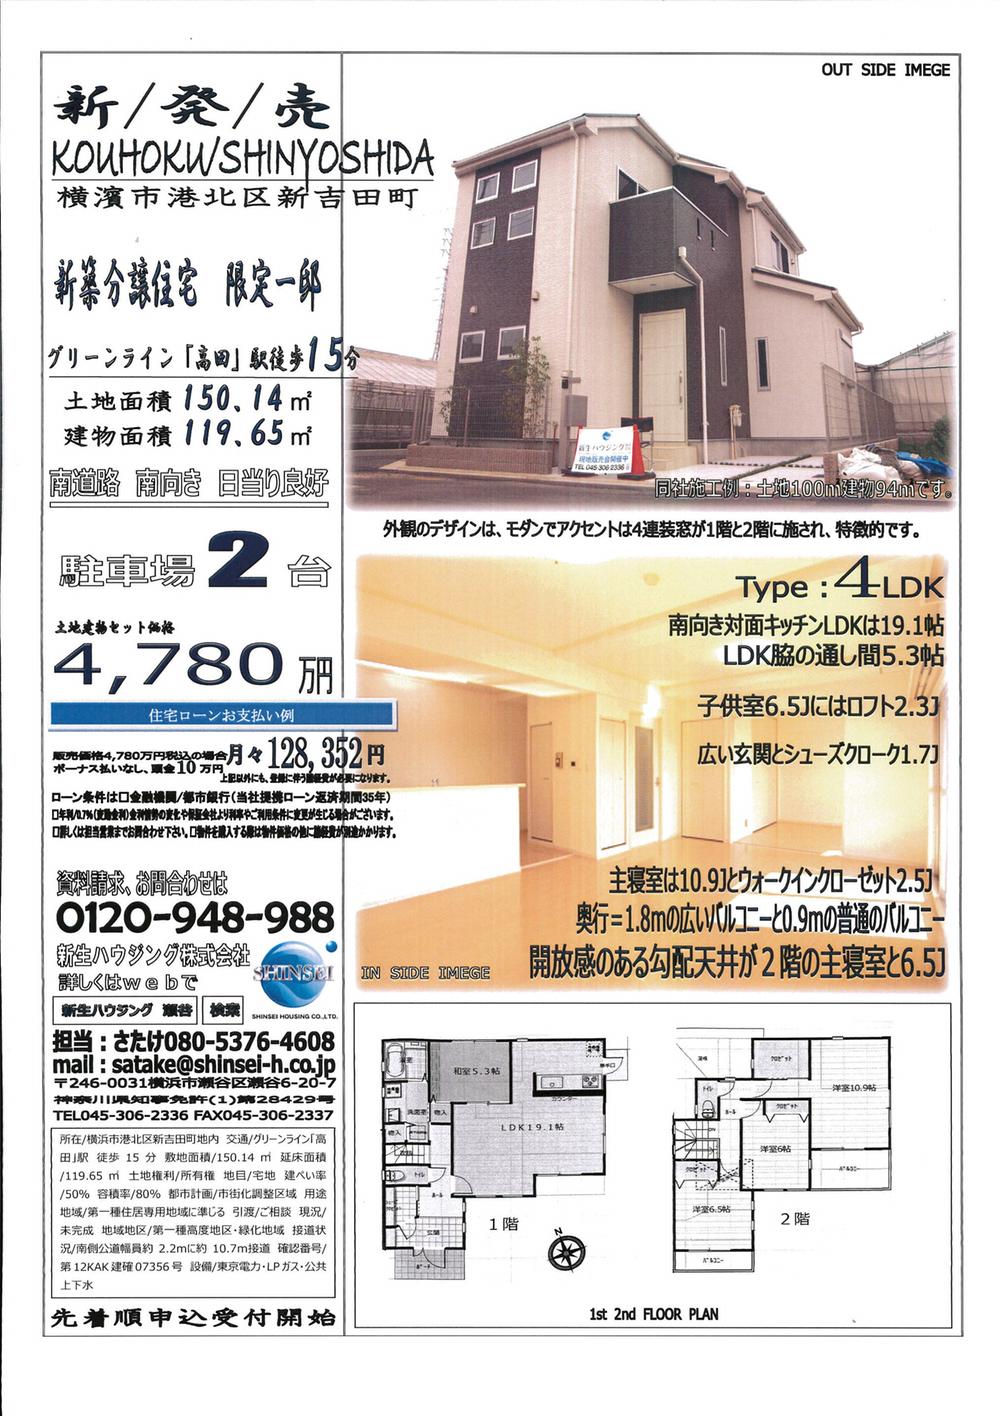 Floor plan. 47,800,000 yen, 4LDK + S (storeroom), Land area 150.14 sq m , Building area 119.65 sq m